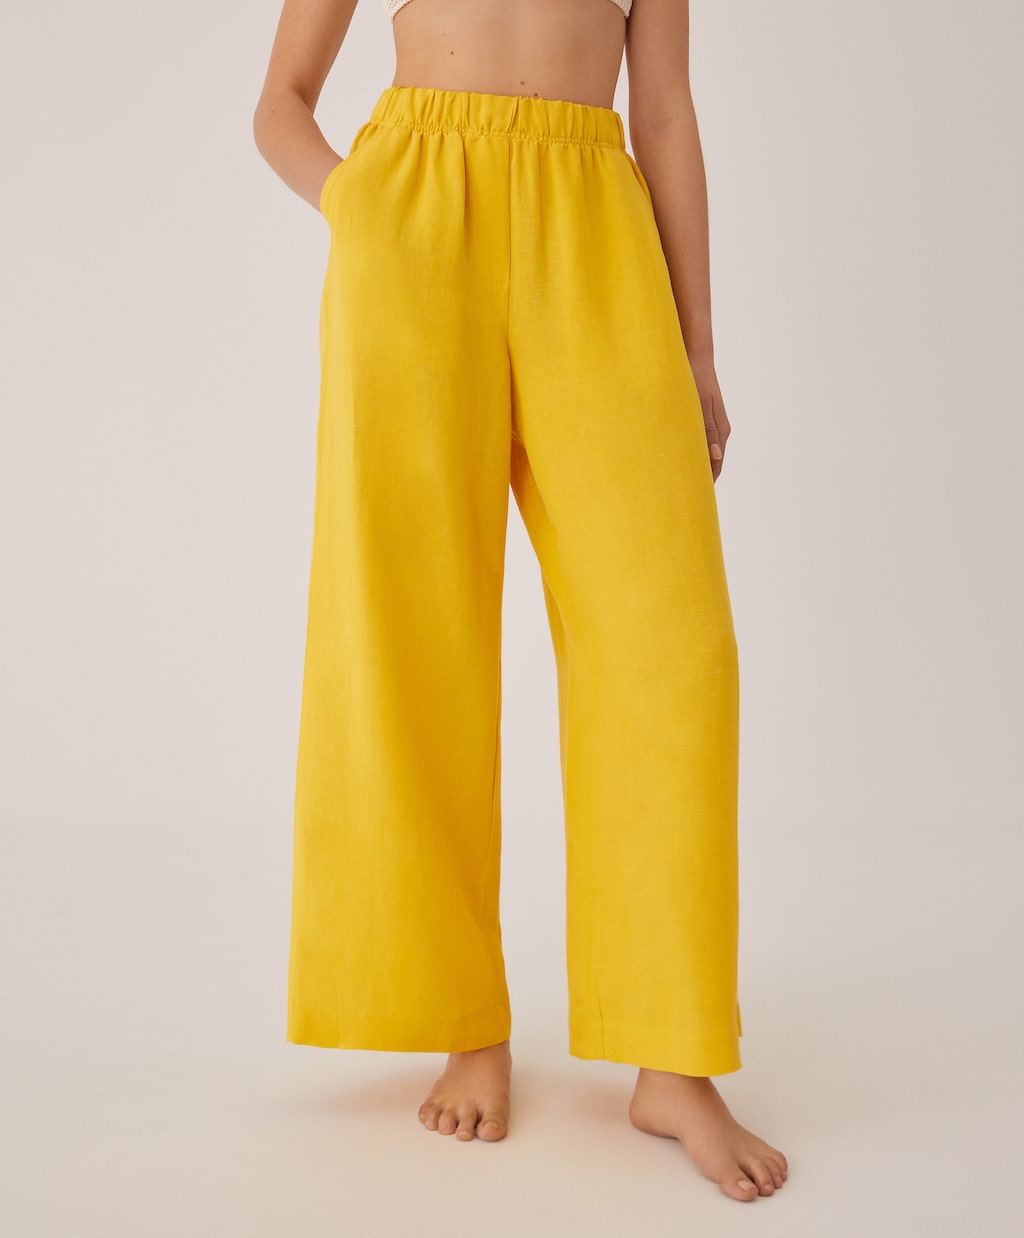 El pantalón de lino amarillo de Oysho con el que llevar un top